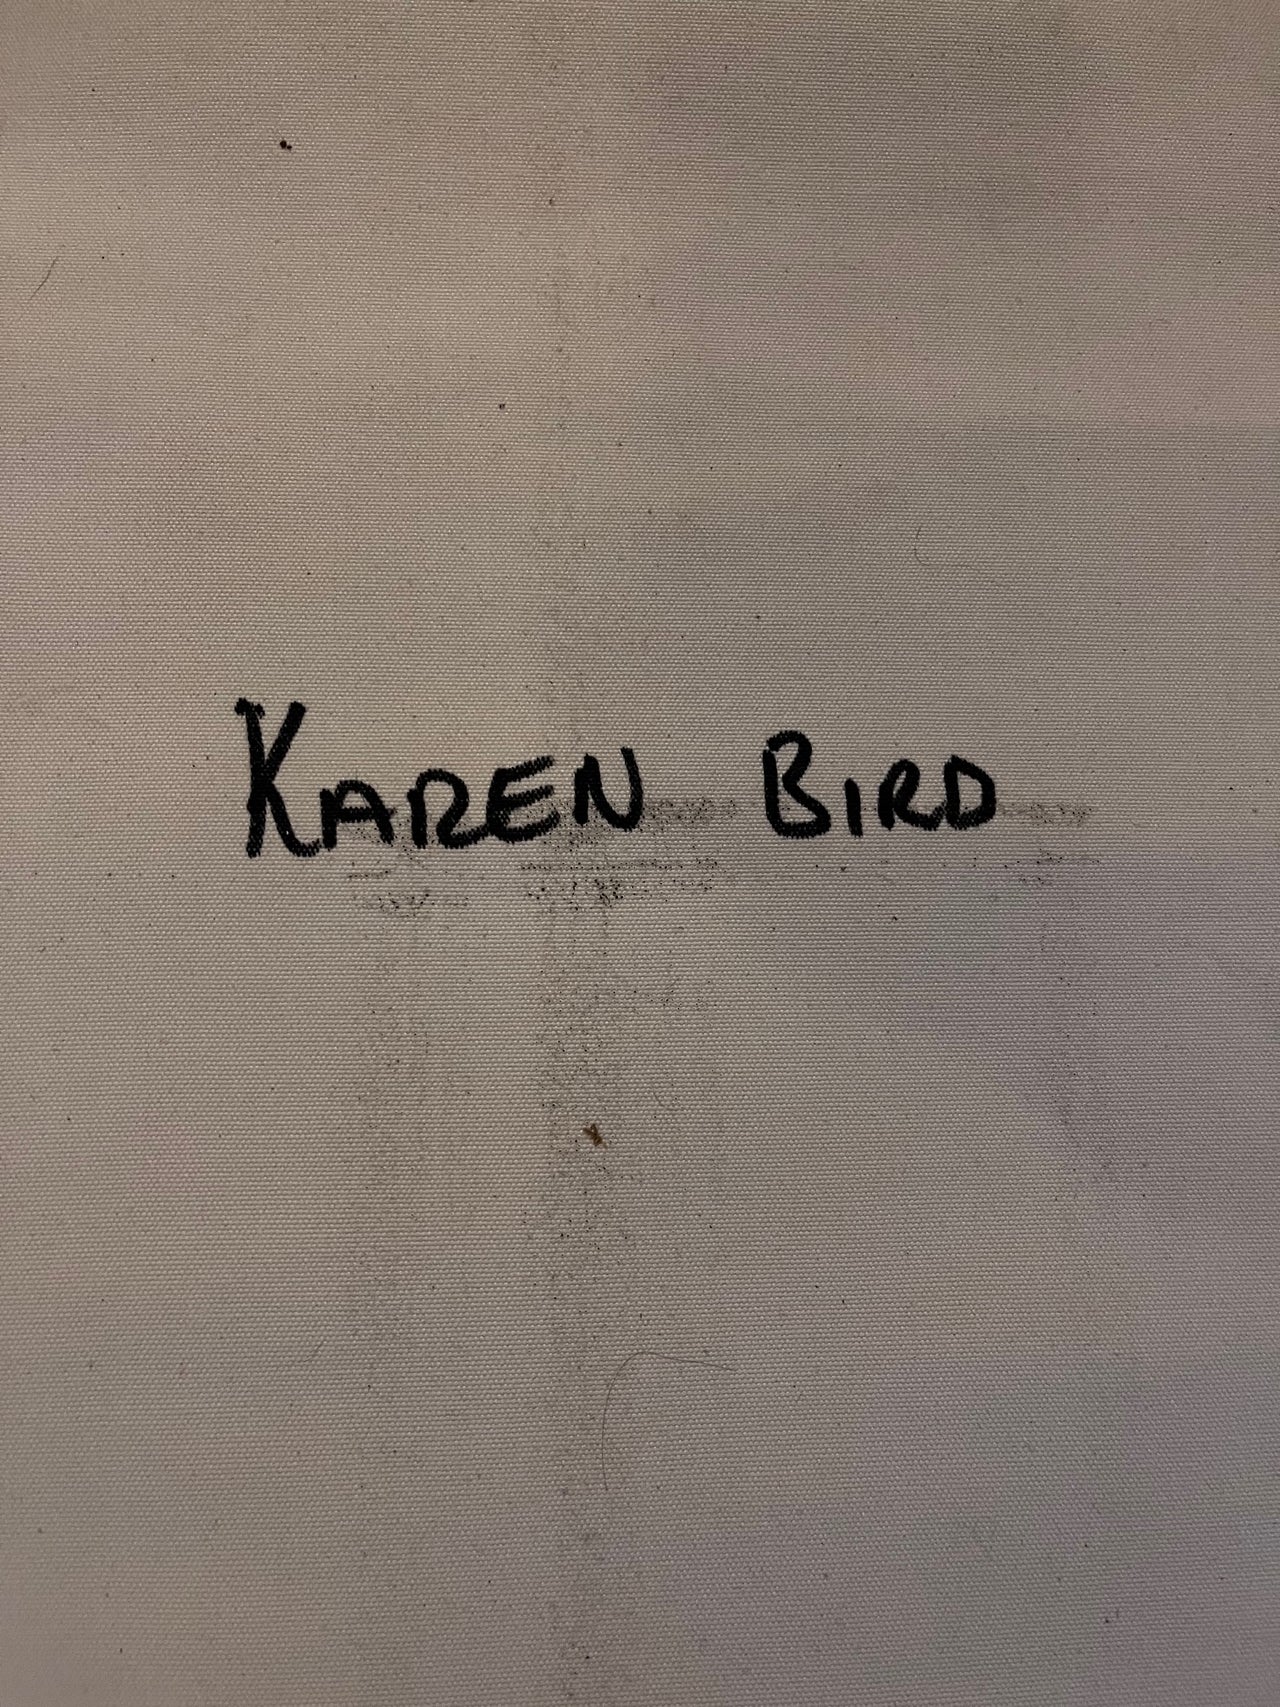 Karen Bird, Aboriginal Art, Indigenous Art, Womens Ceremony, Utopia Art